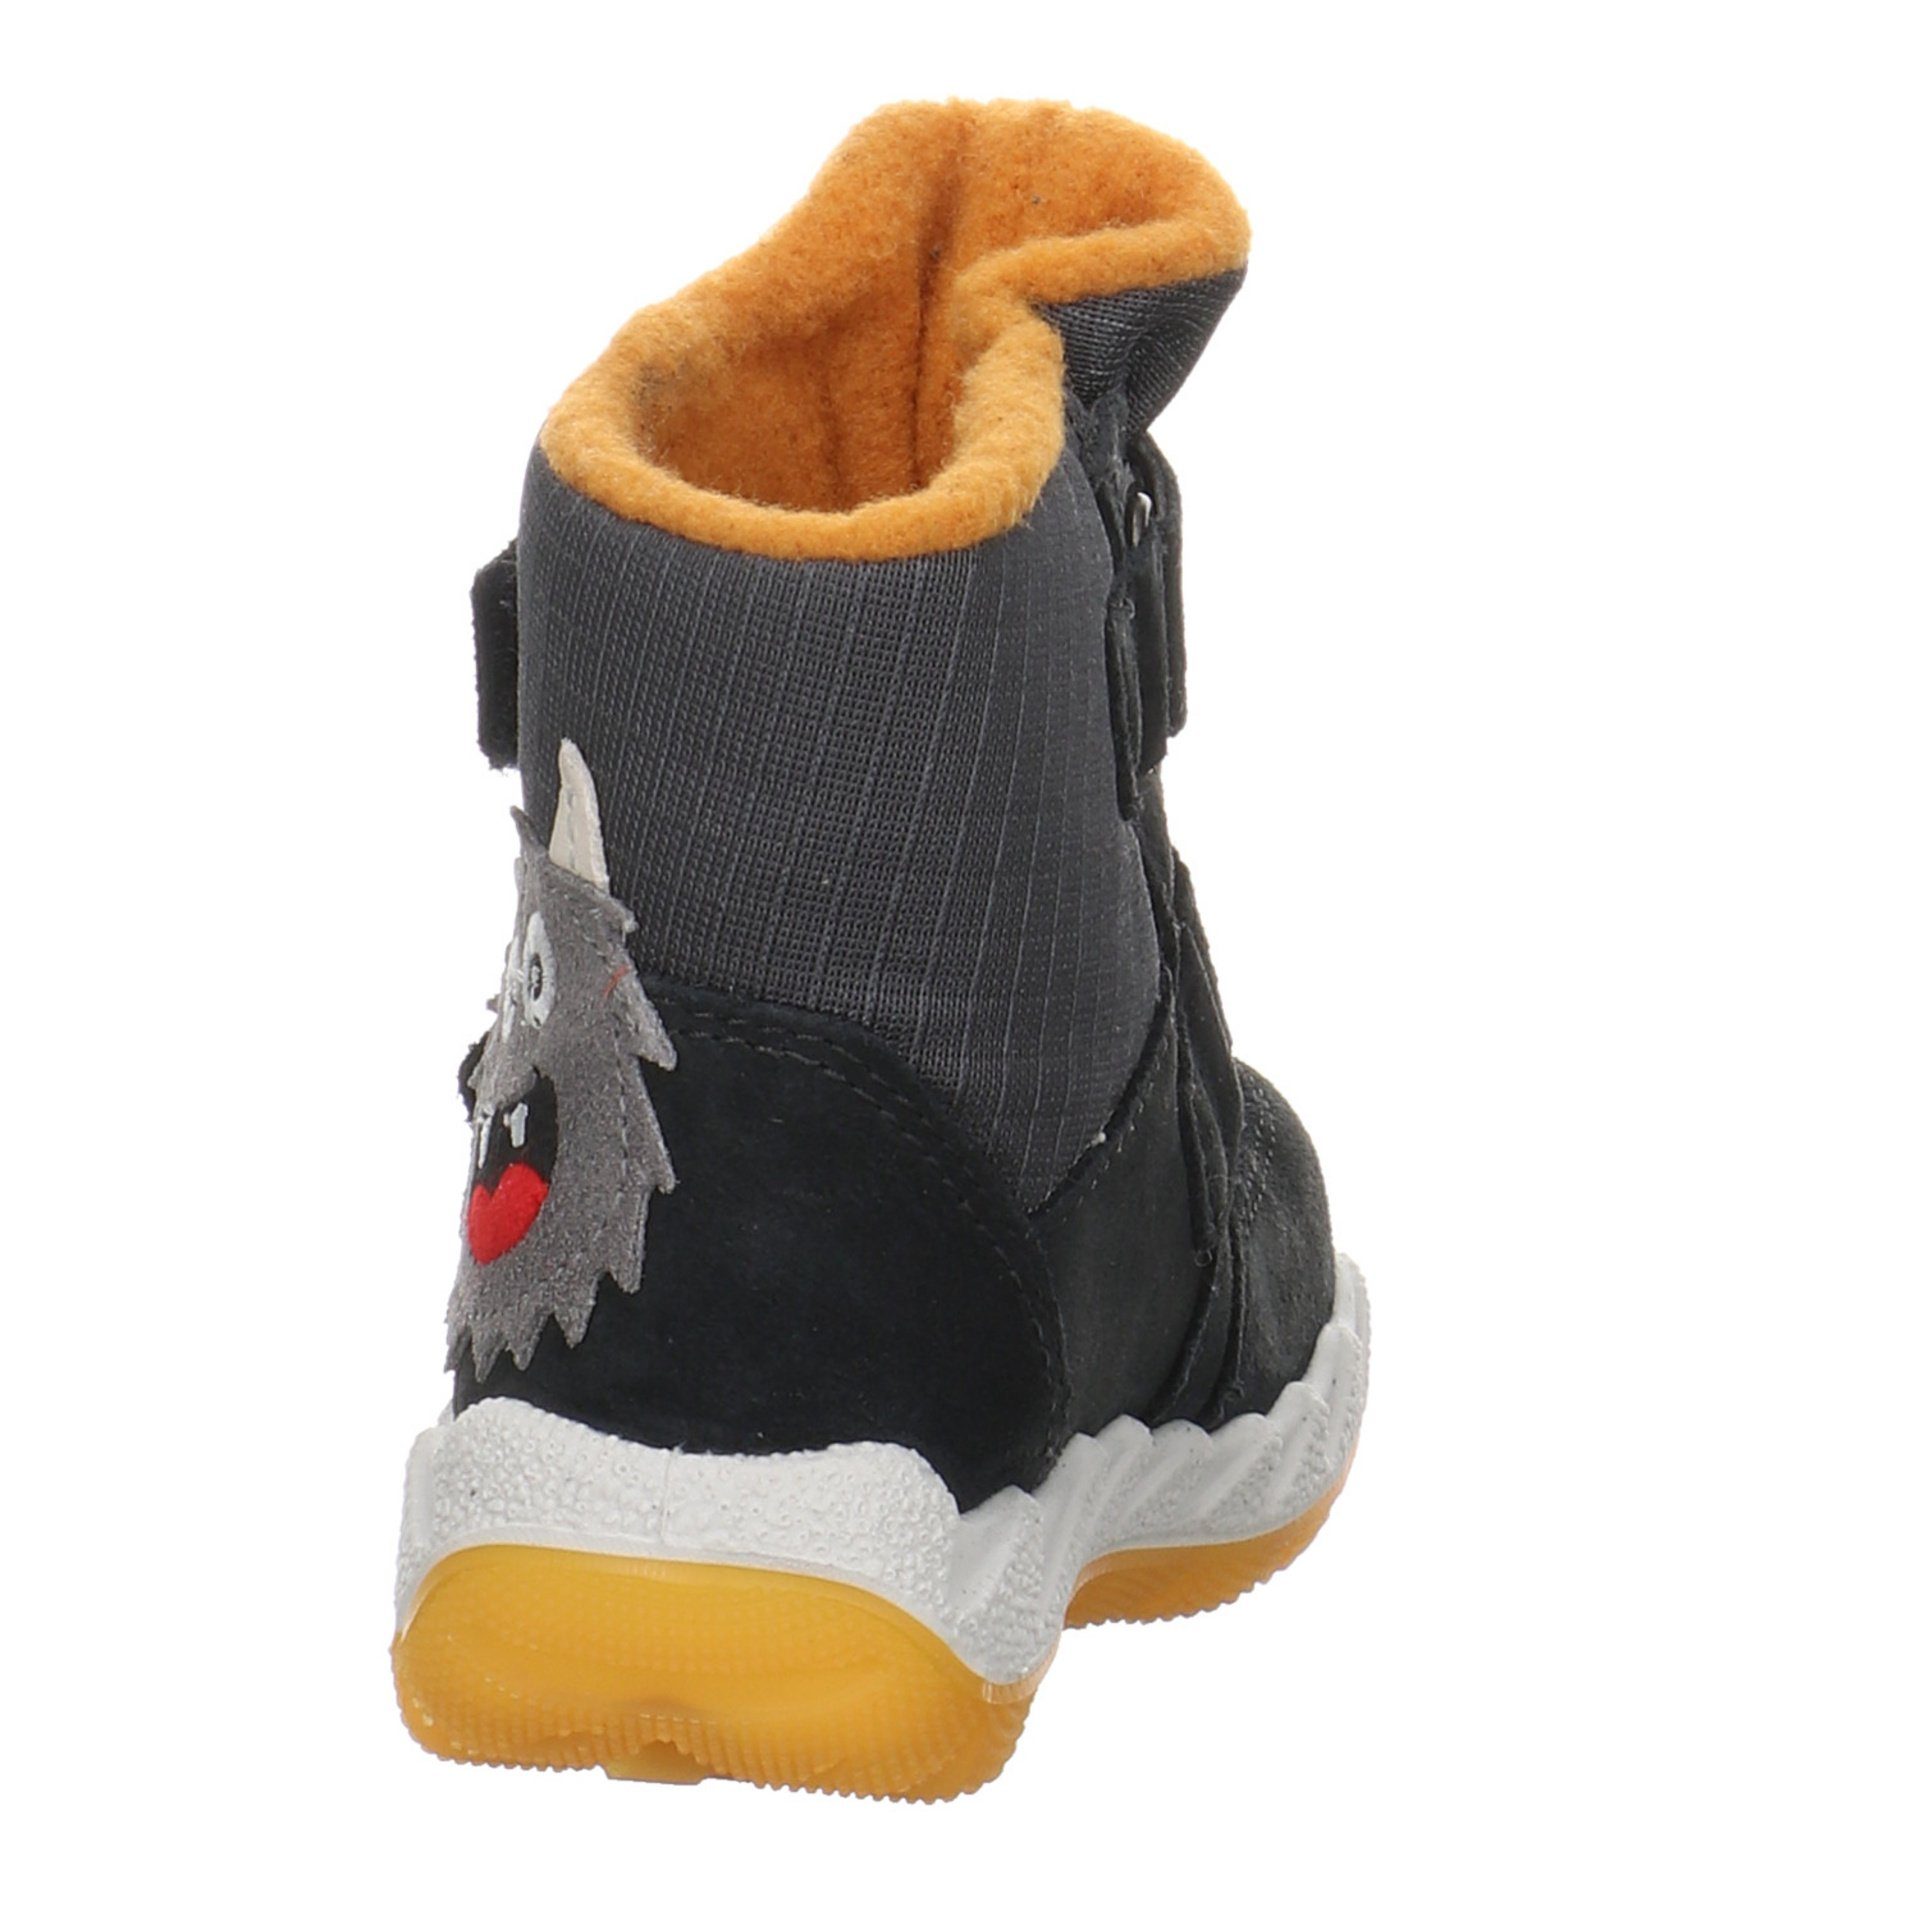 gelb Lauflernschuhe Icebird grau Boots Baby Lauflernschuh Leder-/Textilkombination Krabbelschuhe Superfit